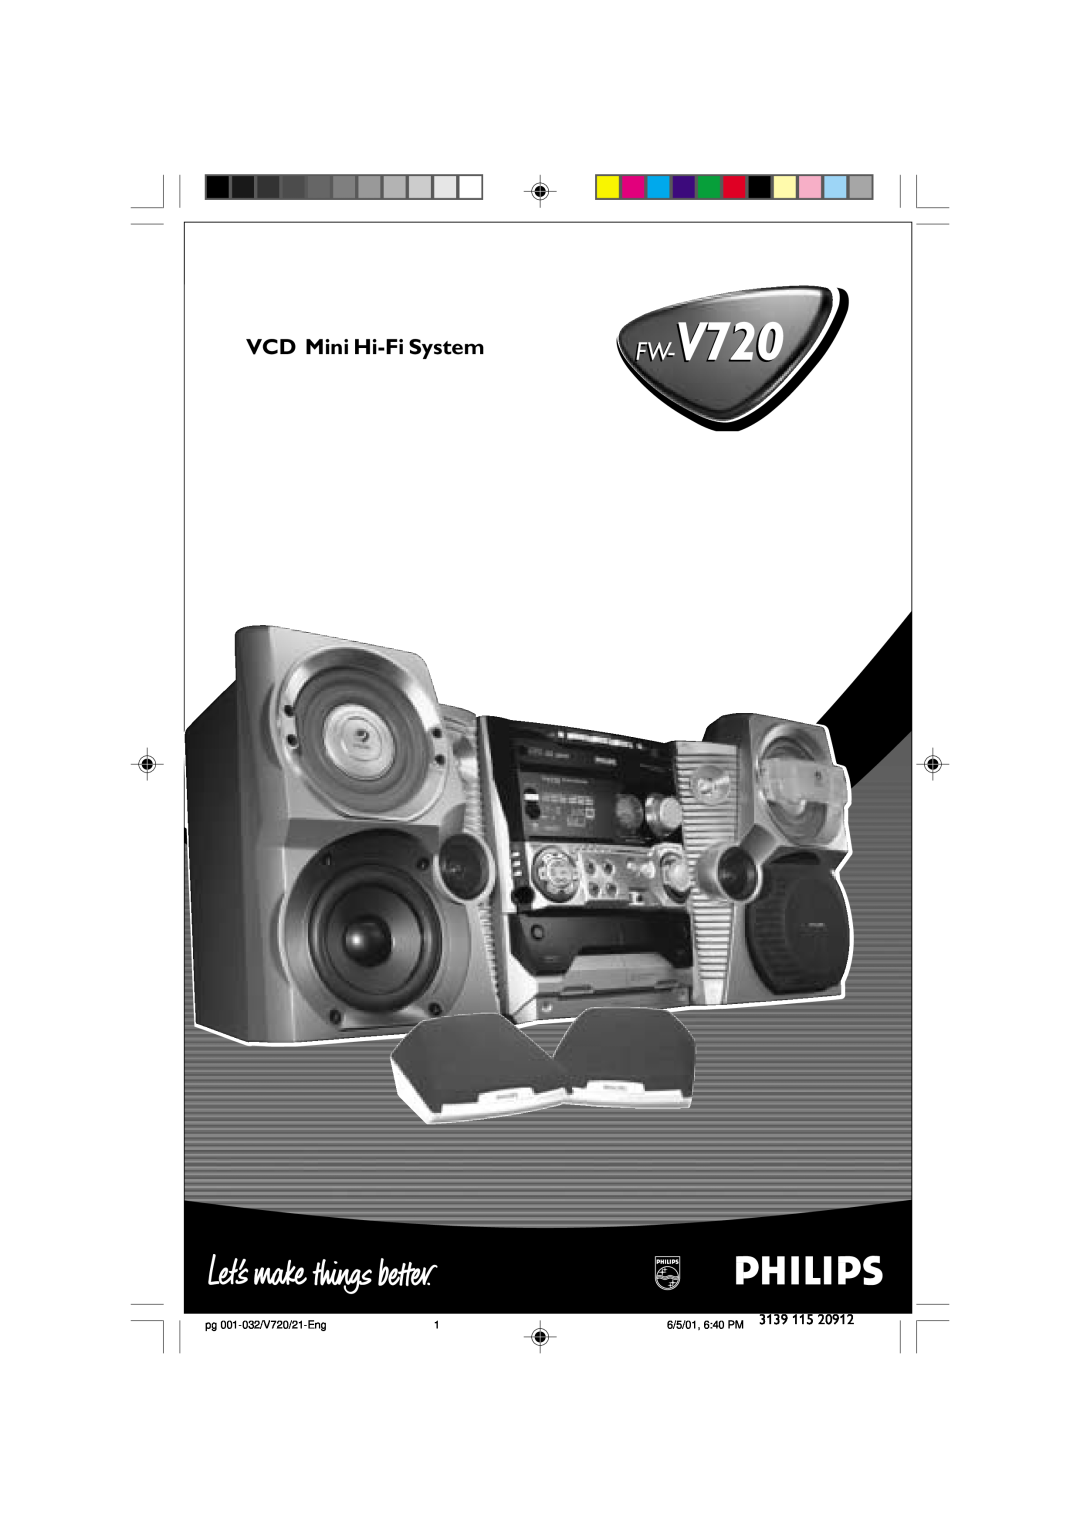 Philips FW-V720 manual VCD Mini Hi-FiSystem, pg 001-032/V720/21-Eng, 6/5/01, 6 40 PM 